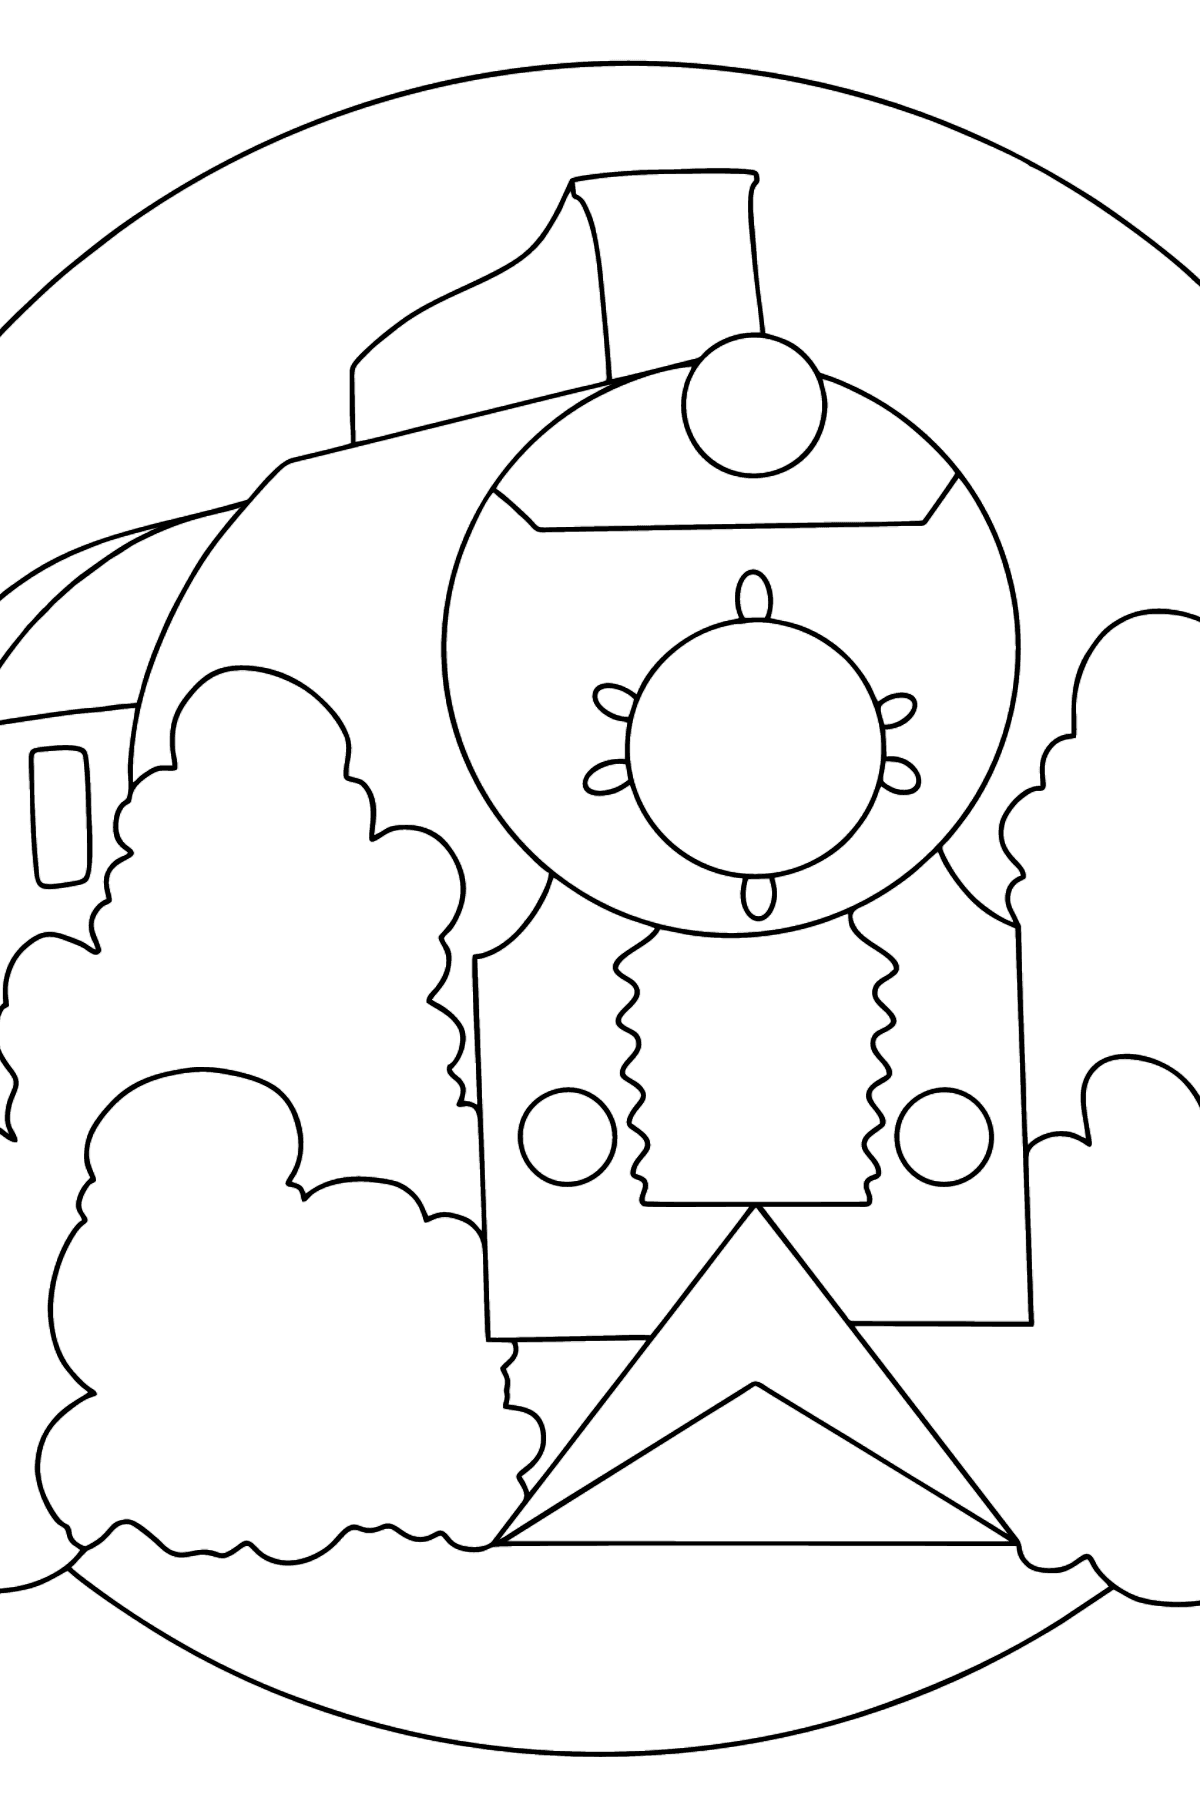 Desenho de Locomotiva com vagões para colorir - Imagens para Colorir para Crianças